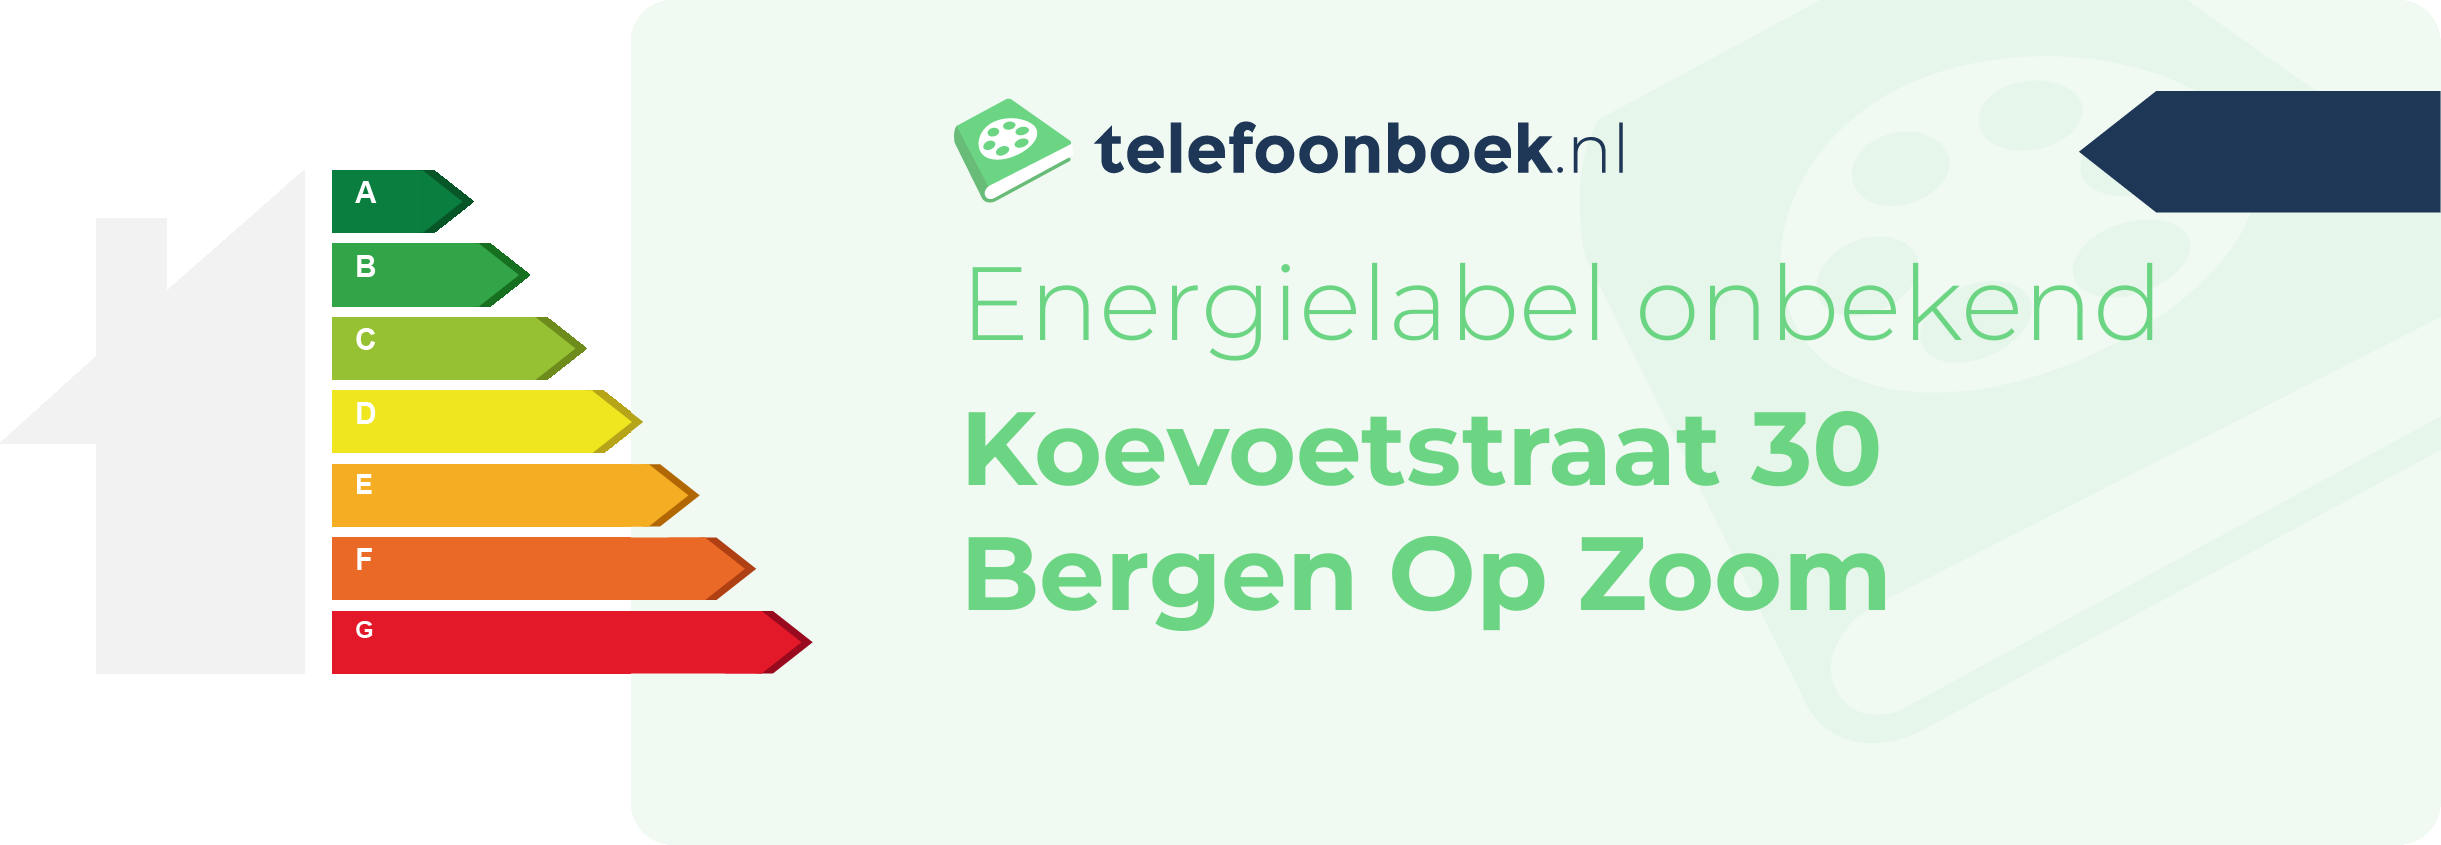 Energielabel Koevoetstraat 30 Bergen Op Zoom